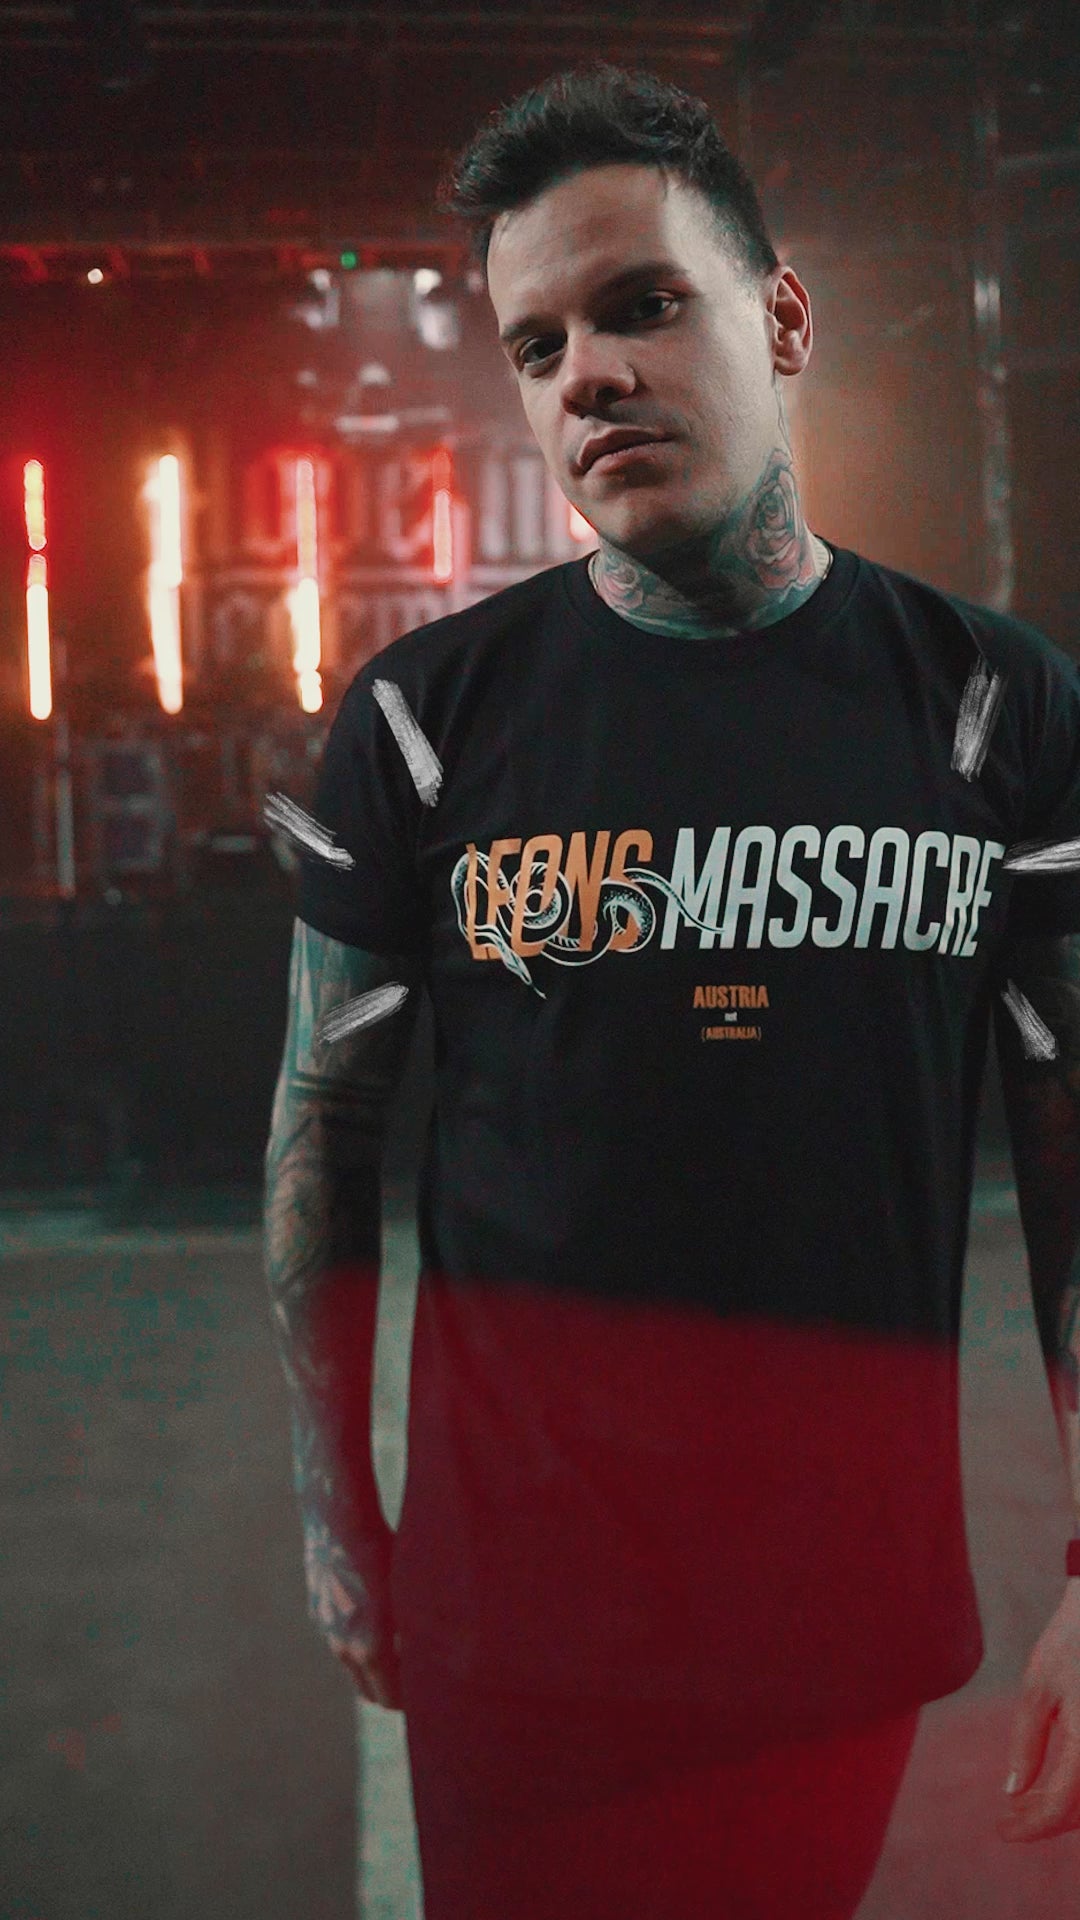 Shop Leons Massacre's official merchandise. Discover exclusive t-shirts, hoodies, accessories & more.